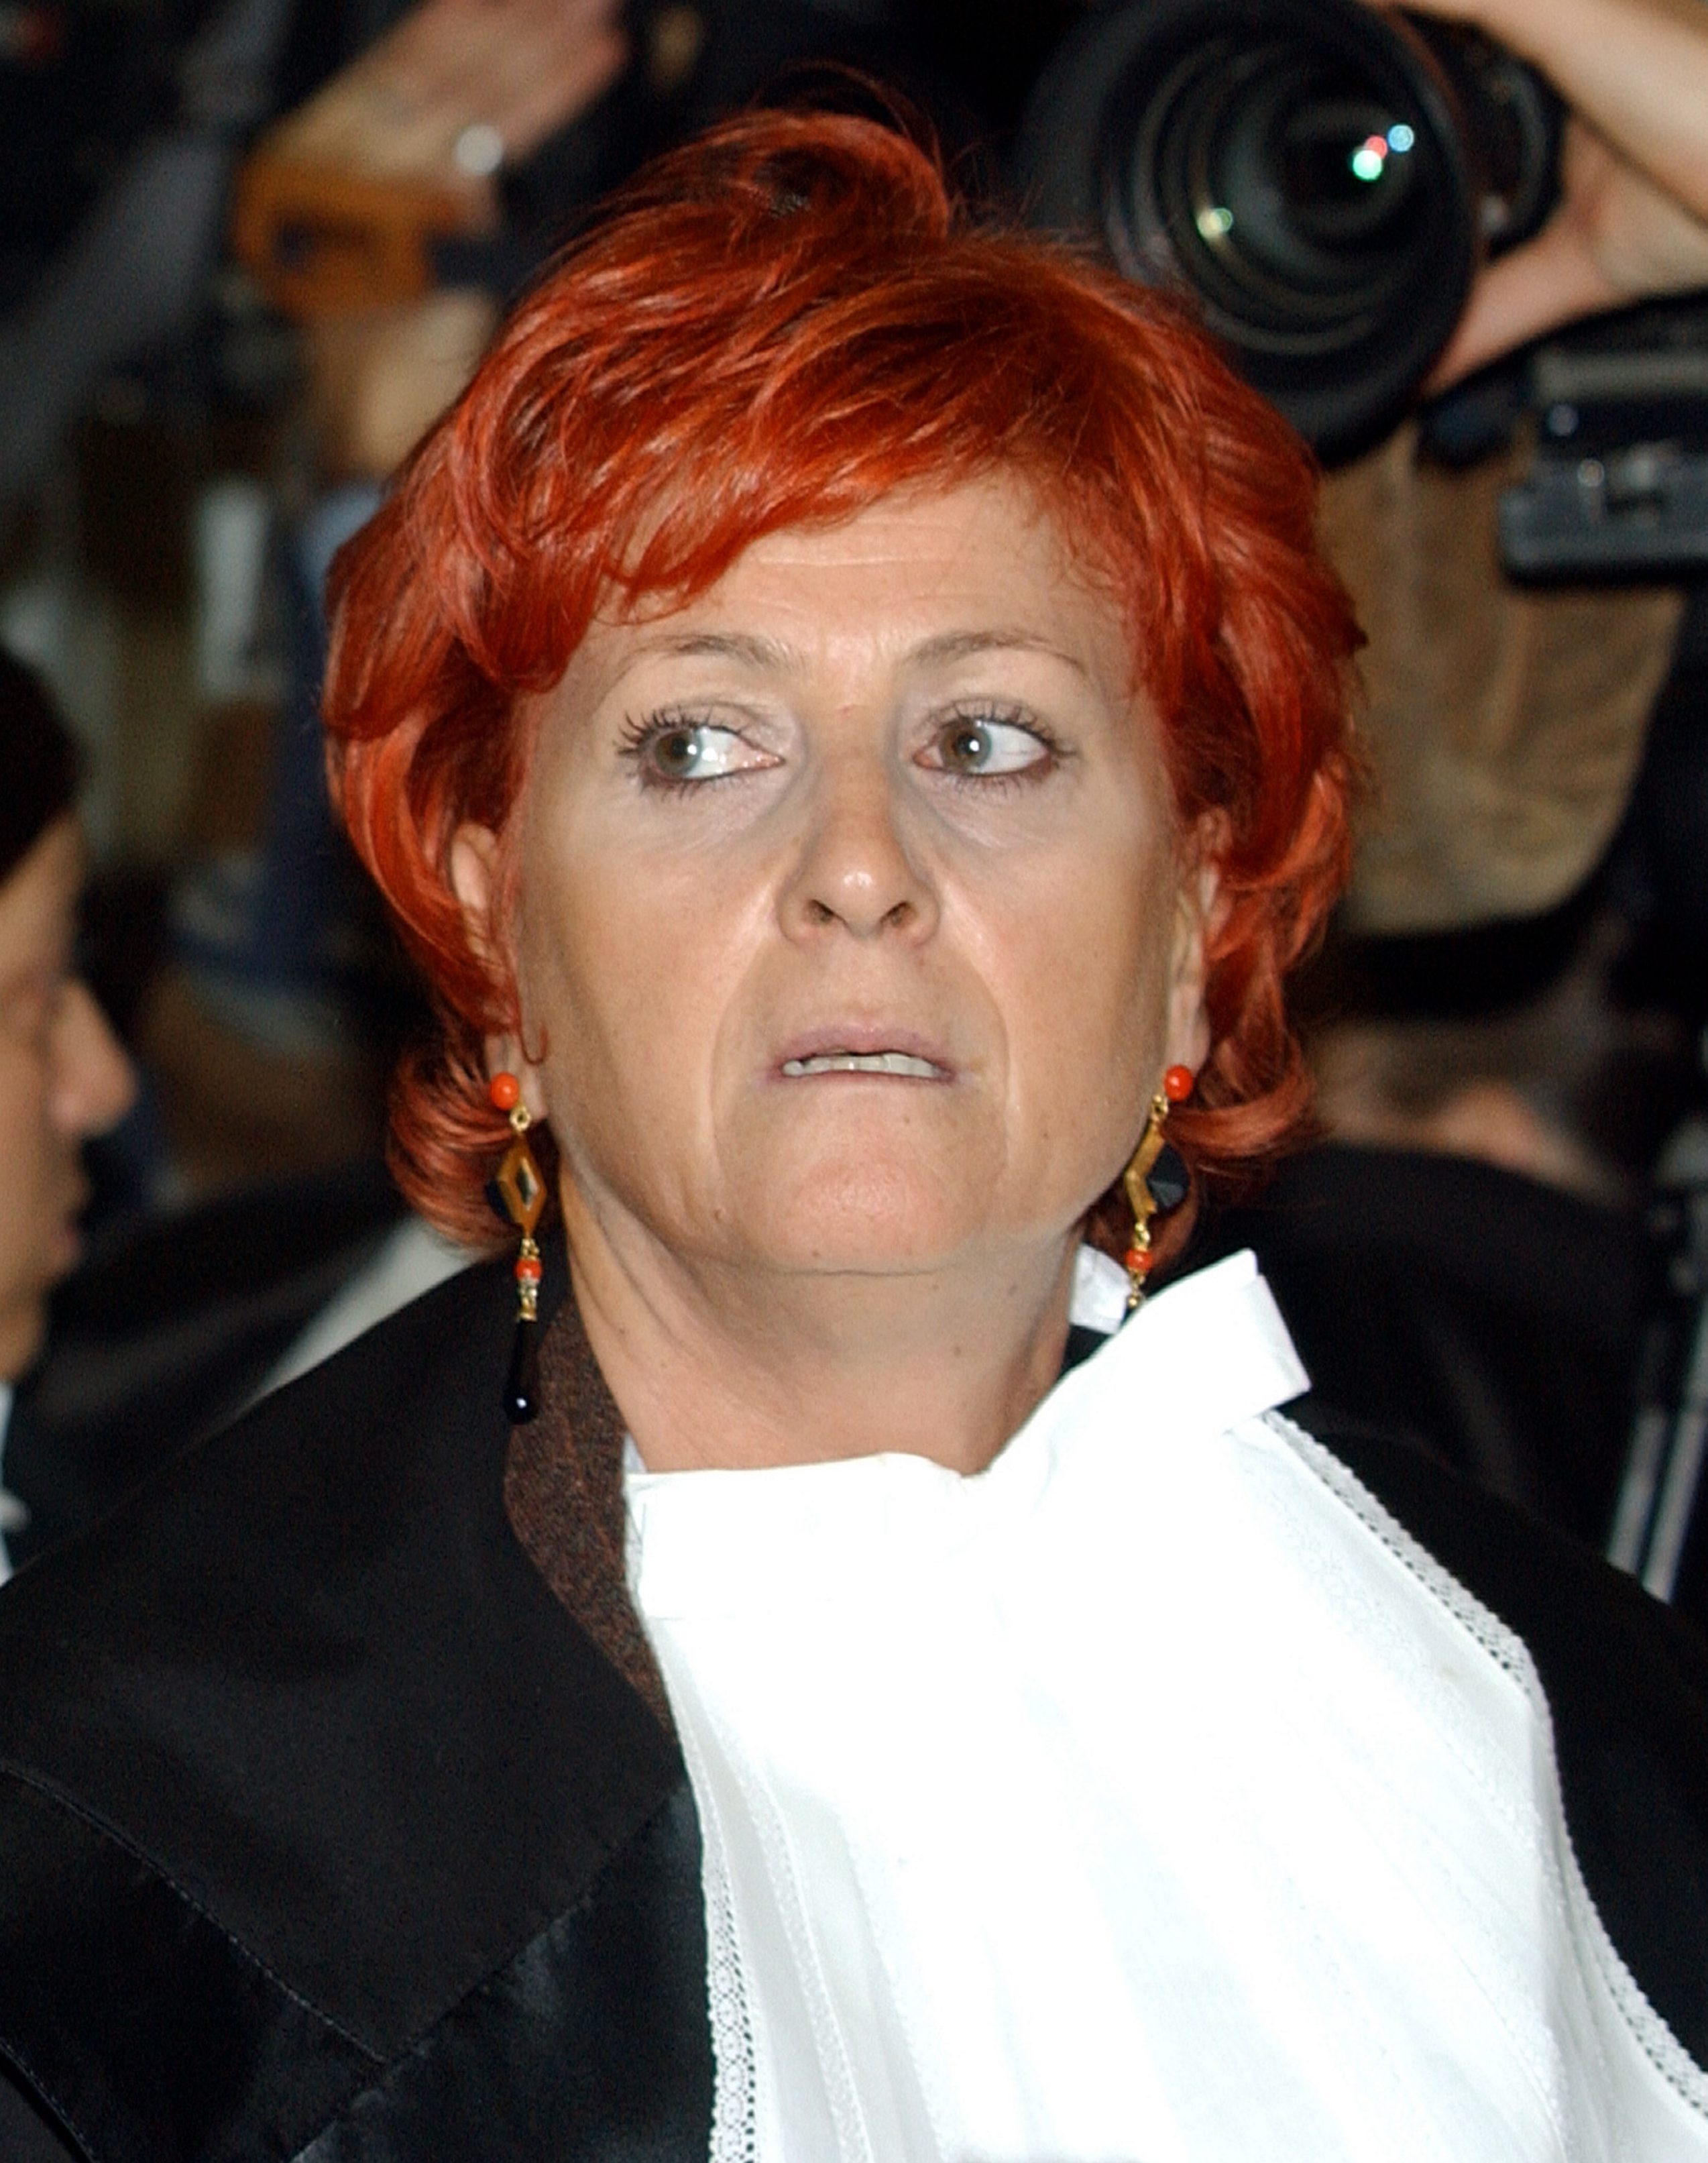 Åklagaren Ilda Boccassini ska också ha gestaltats av burleskdansösen.